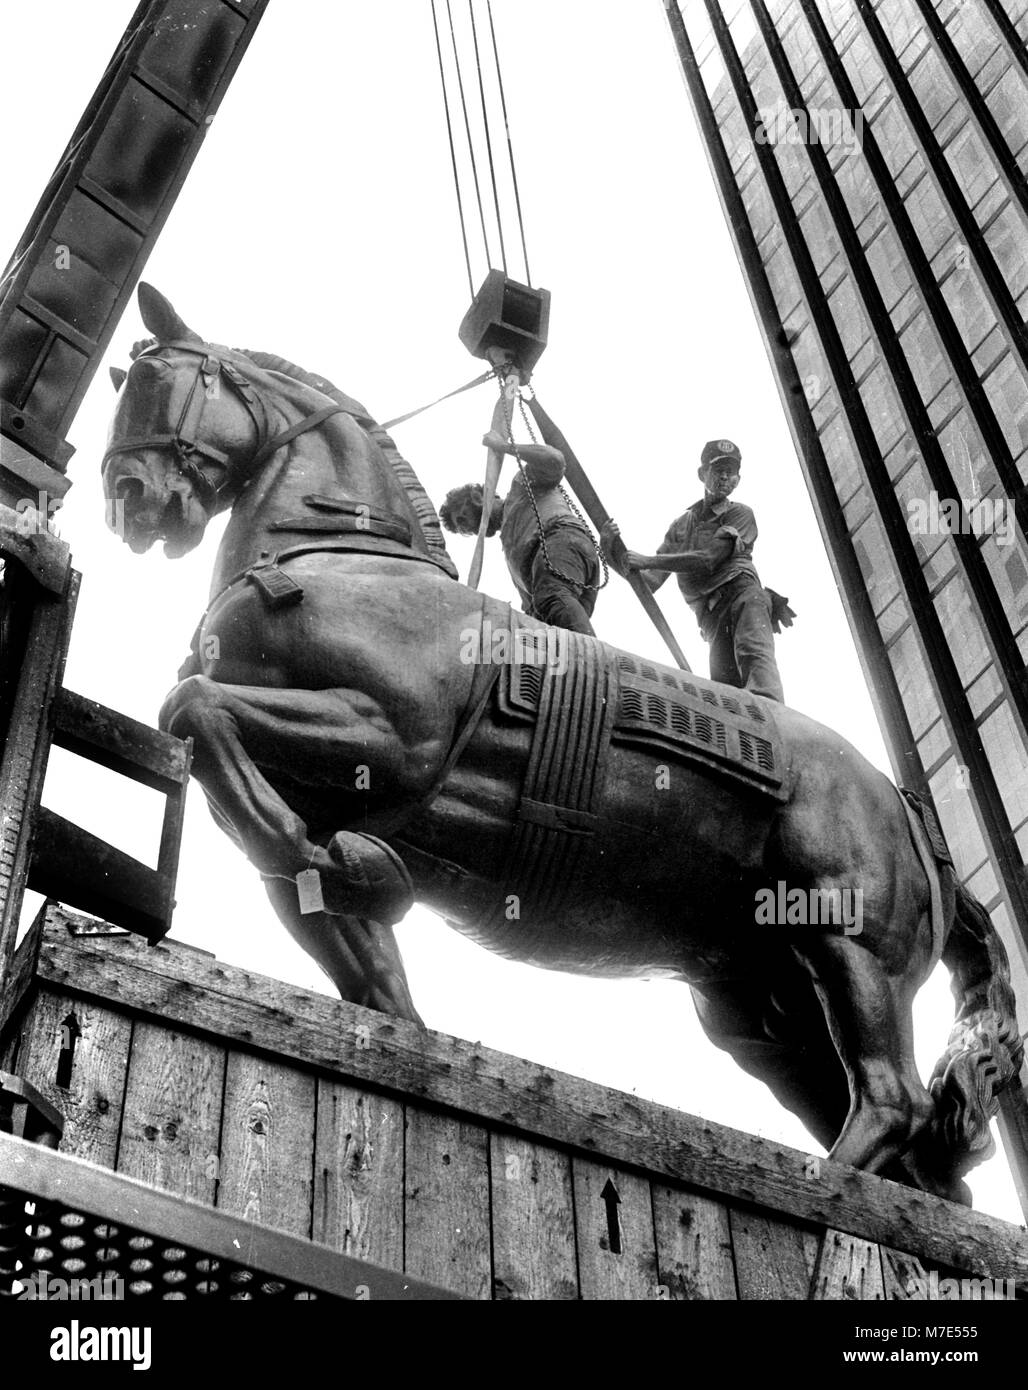 Trammell Crow's Bronze Pferd nach Dallas, TX USA, das Denkmal zu Alvear Pferd von Antoine Bourdelle (31. Oktober 1861 bis 1. Oktober 1929), eine einflussreiche und produktivsten französischen Bildhauer Foto von Bill Belknap 1985 geliefert Stockfoto